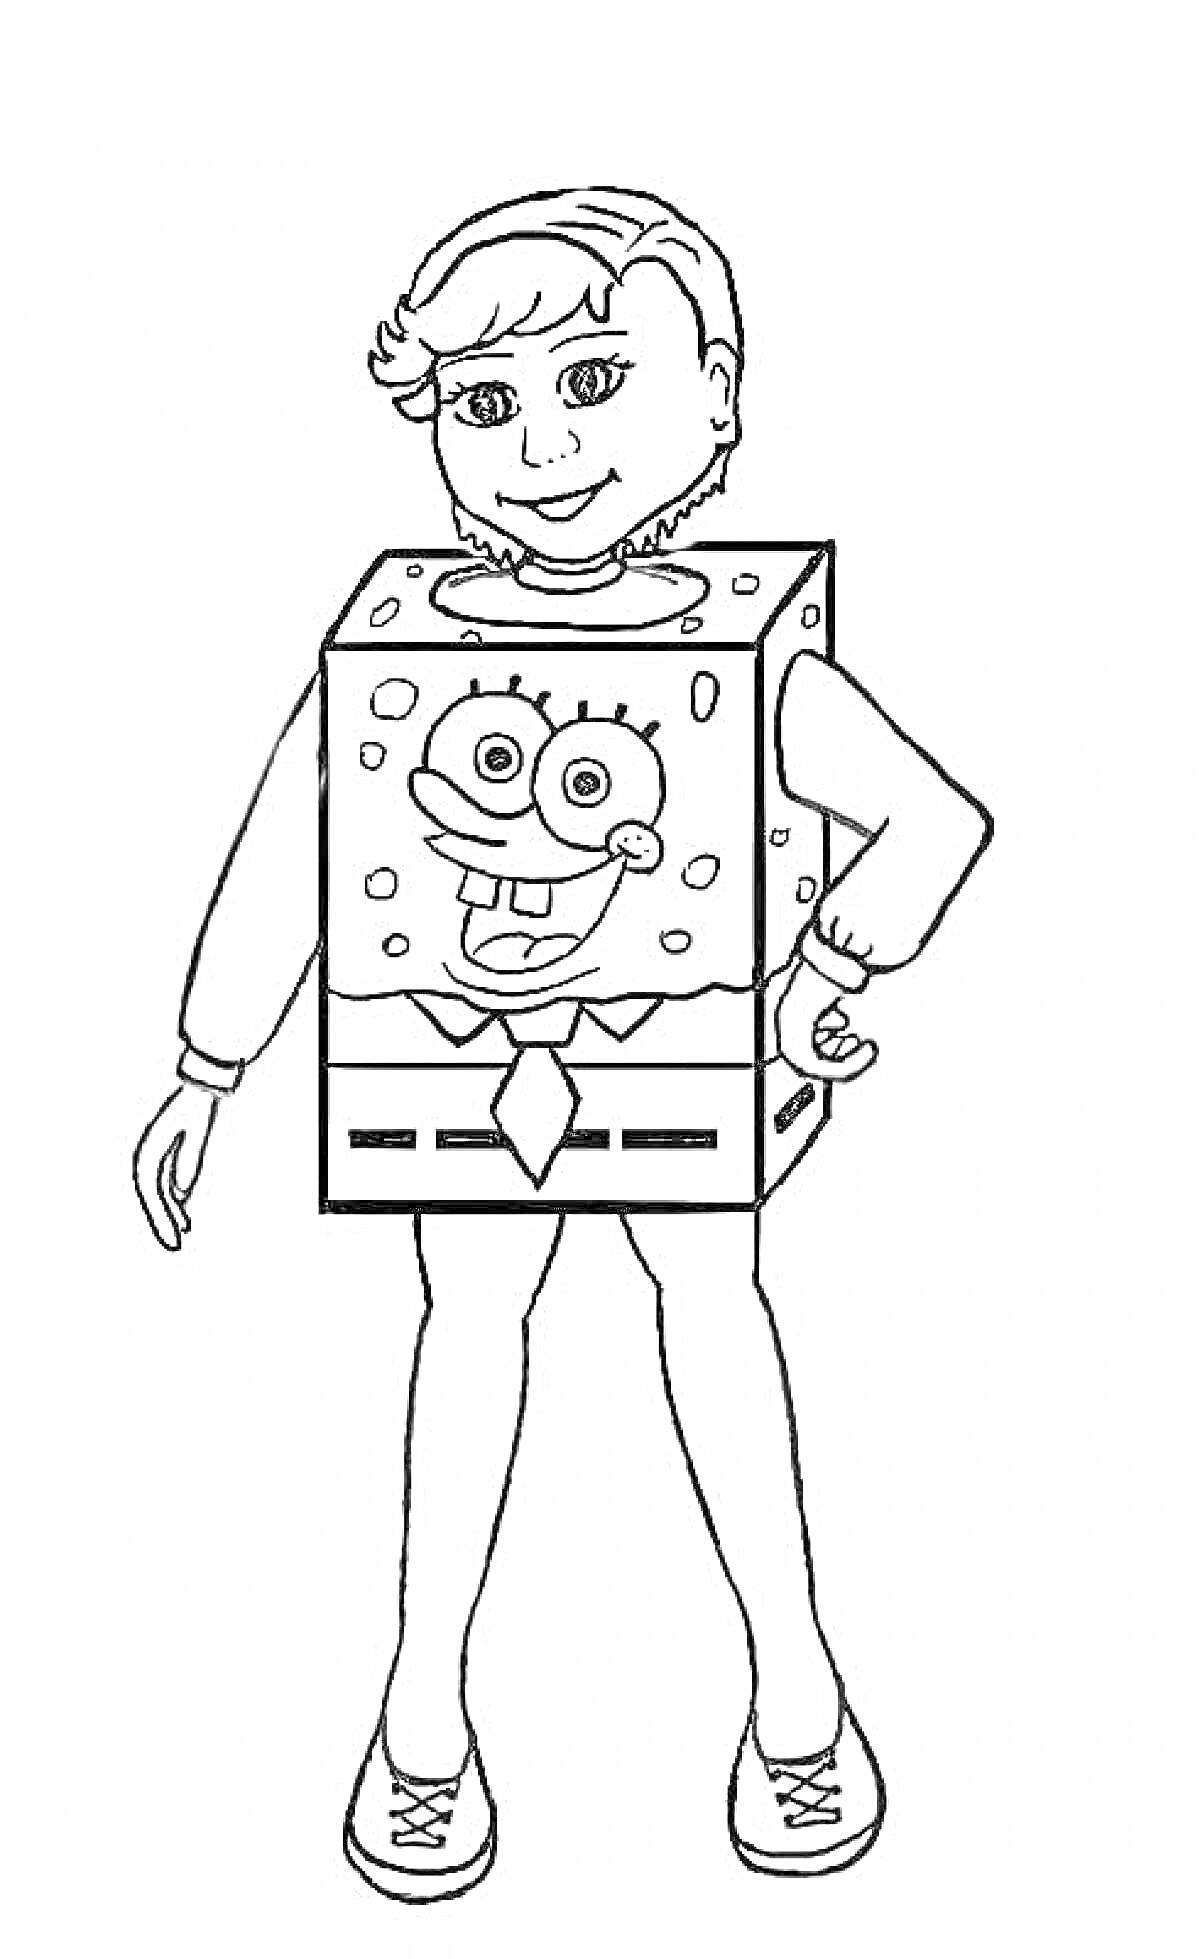 Раскраска Костюм Спанч Боб. Ребёнок в костюме персонажа мультфильма Спанч Боб с тематическими деталями: квадратный костюм с изображением лица Спанч Боба, руки и ноги ребёнка вне костюма, кроссовки.